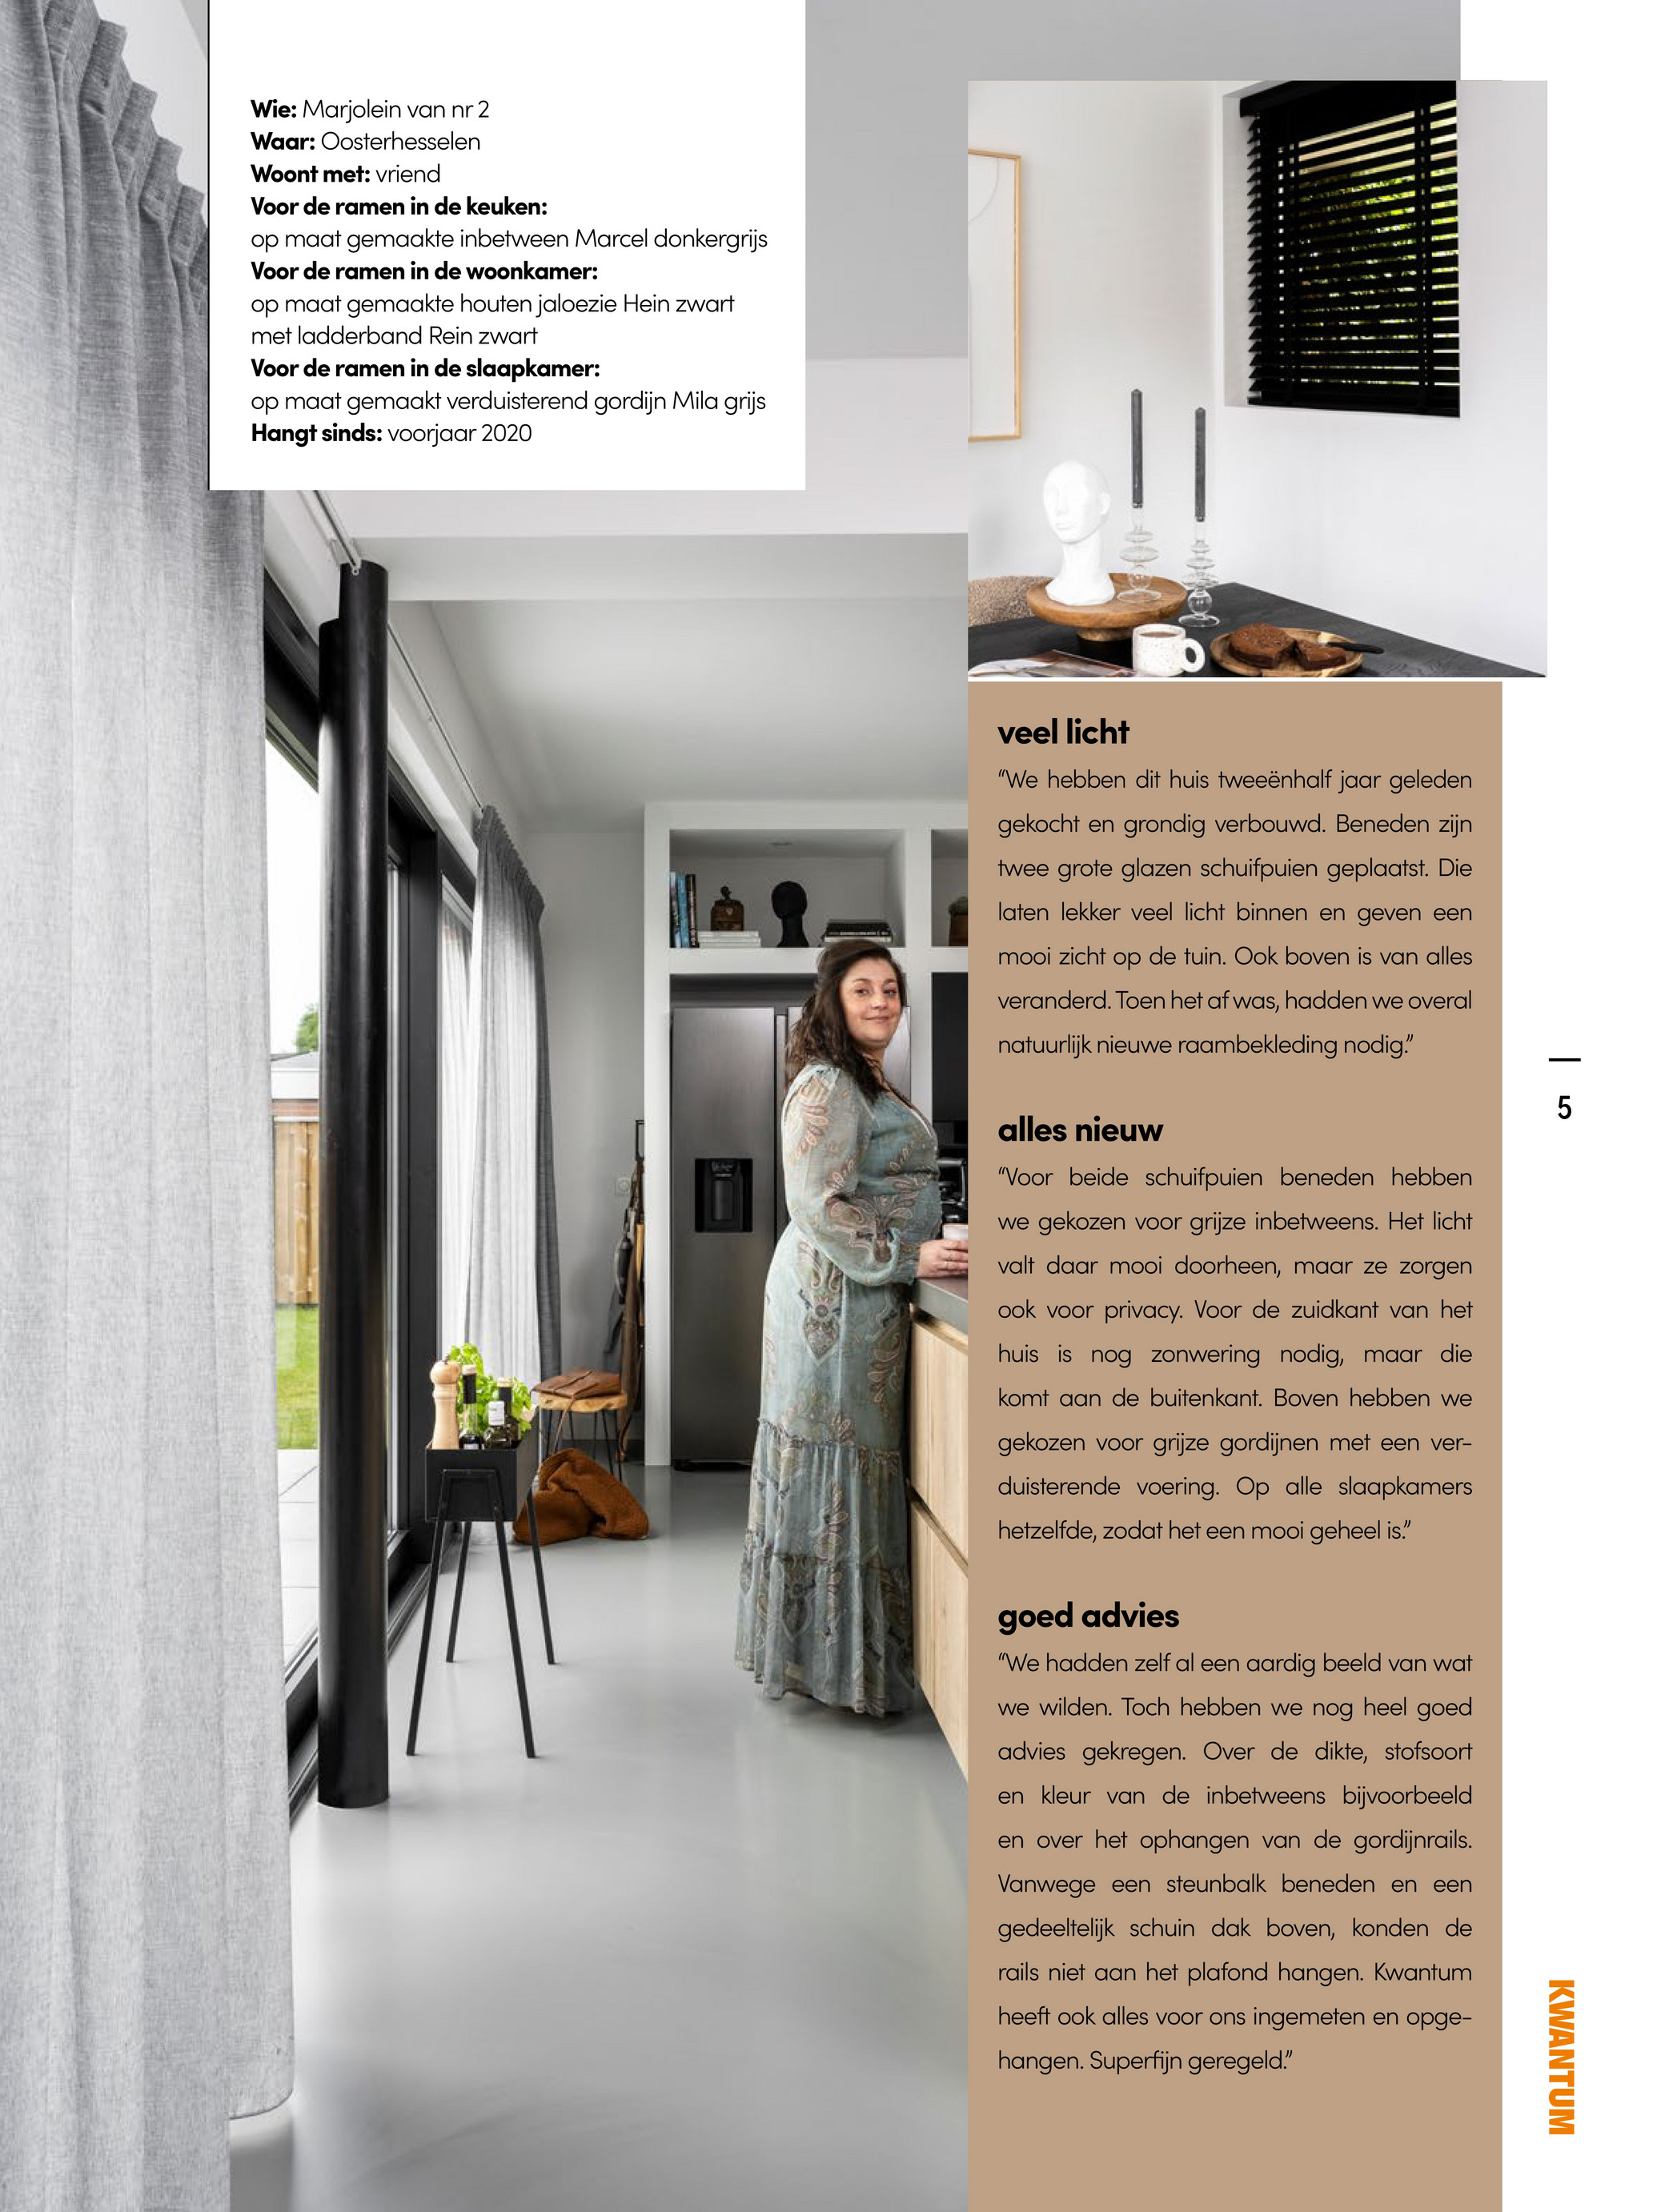 Gedeeltelijk Elektricien Een trouwe Kwantum Magazine NL - Raammagazine najaar 2021 - Inbetween Arlette Zwart